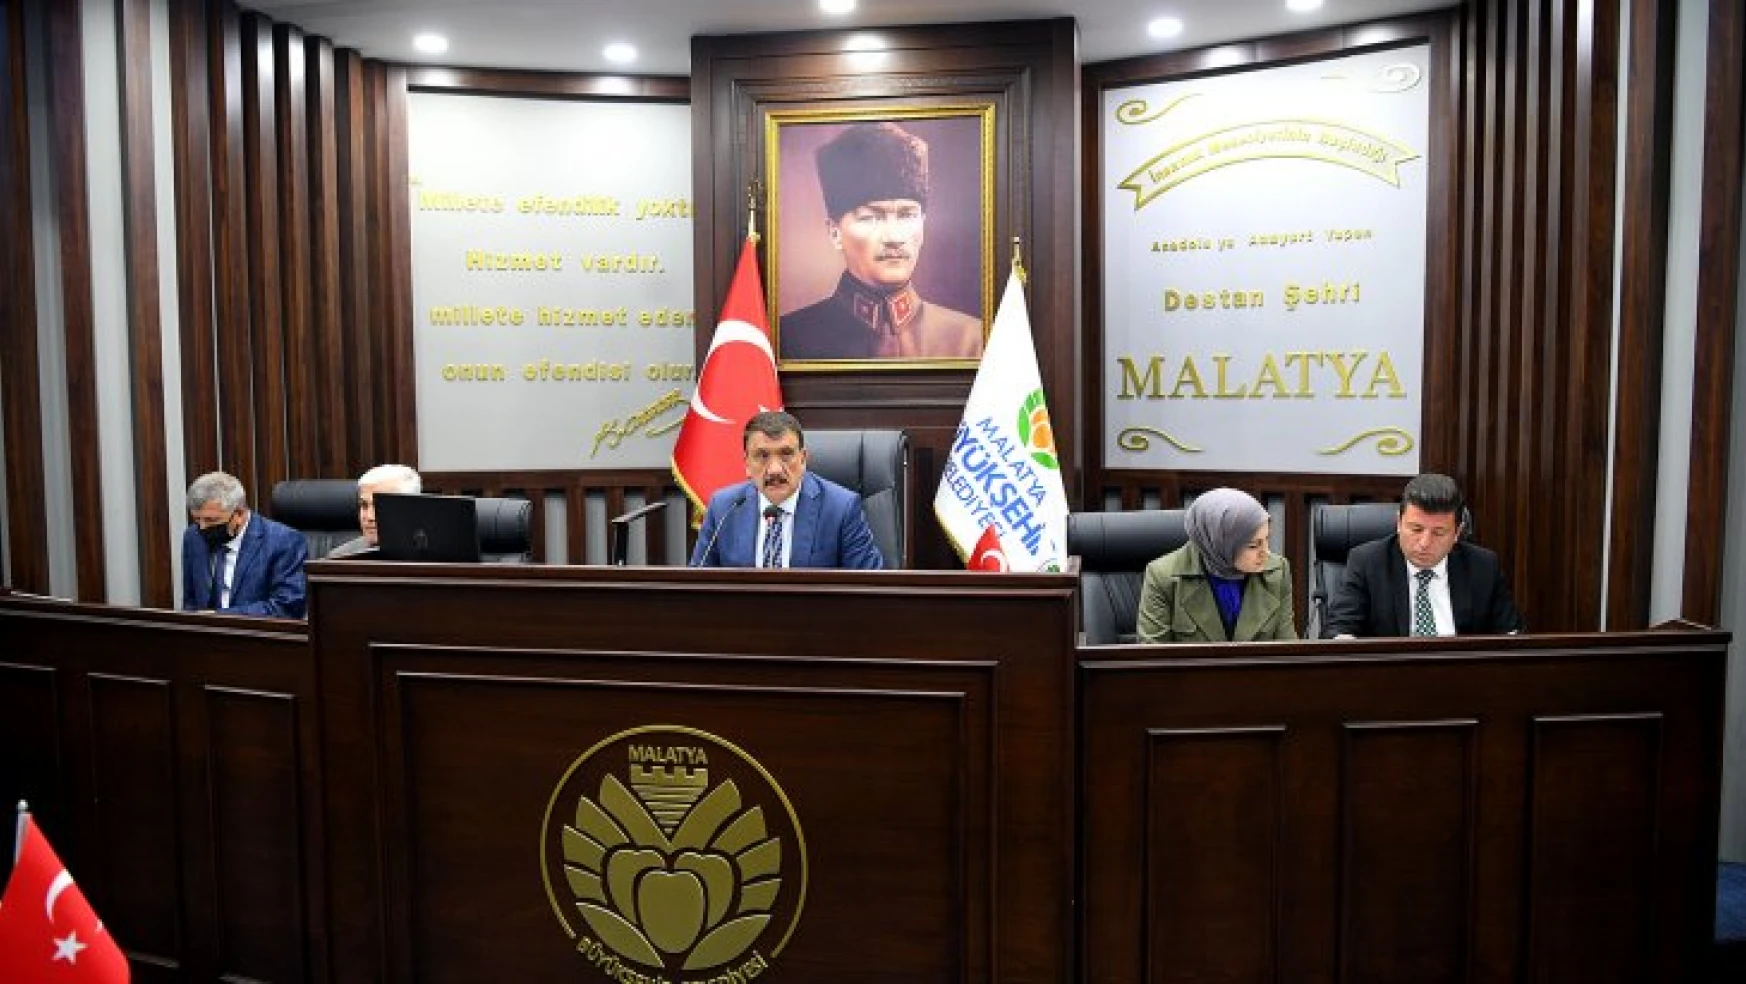 Büyükşehir Belediye Meclisi Nisan Ayı İlk Toplantısı Yapıldı